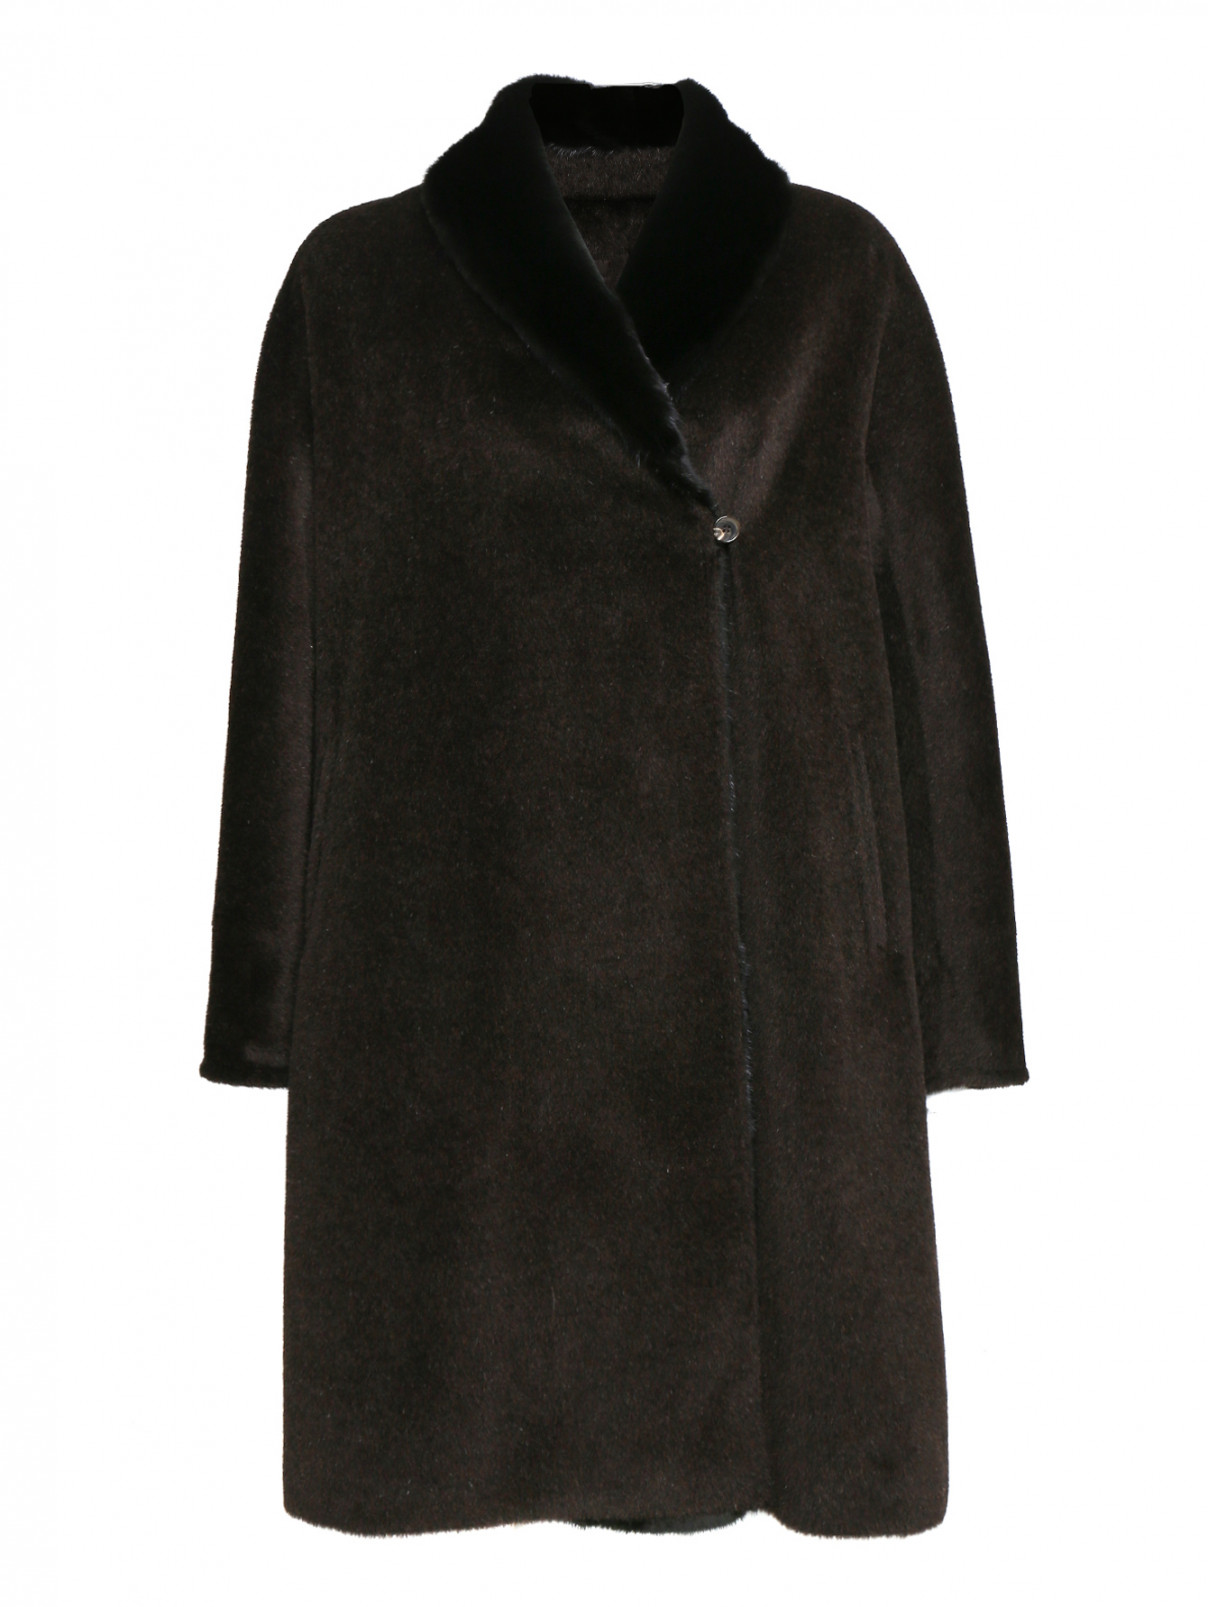 Пальто из шерсти, декорированное мехом норки Marina Rinaldi  –  Общий вид  – Цвет:  Коричневый